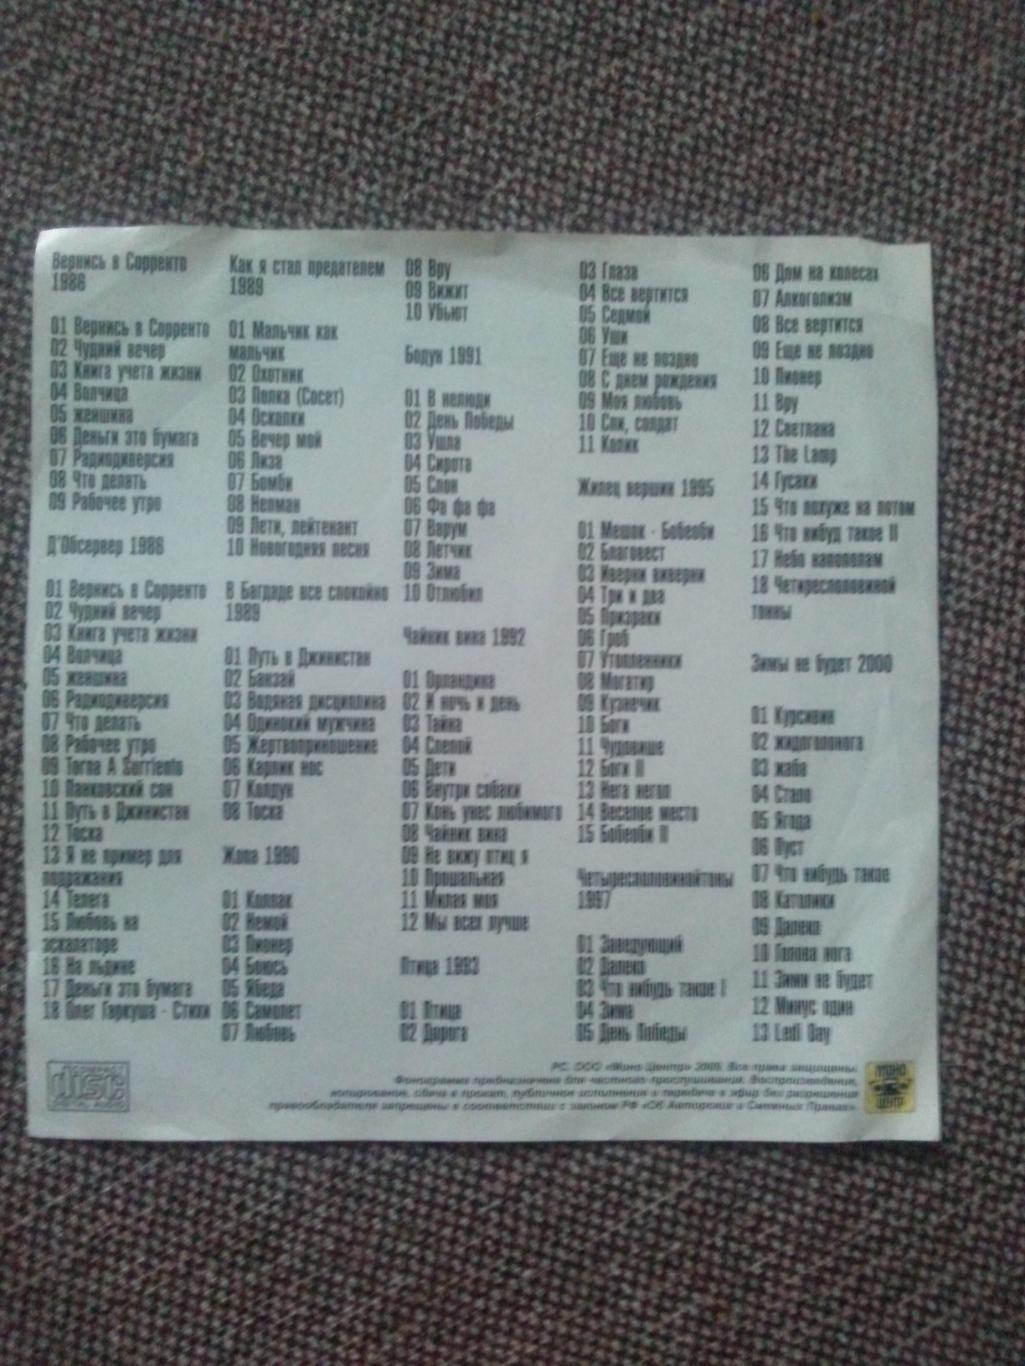 MP - 3 CD диск : группаАукцыон1986 - 2000 гг. 11 альбомов (Русский рок) 1